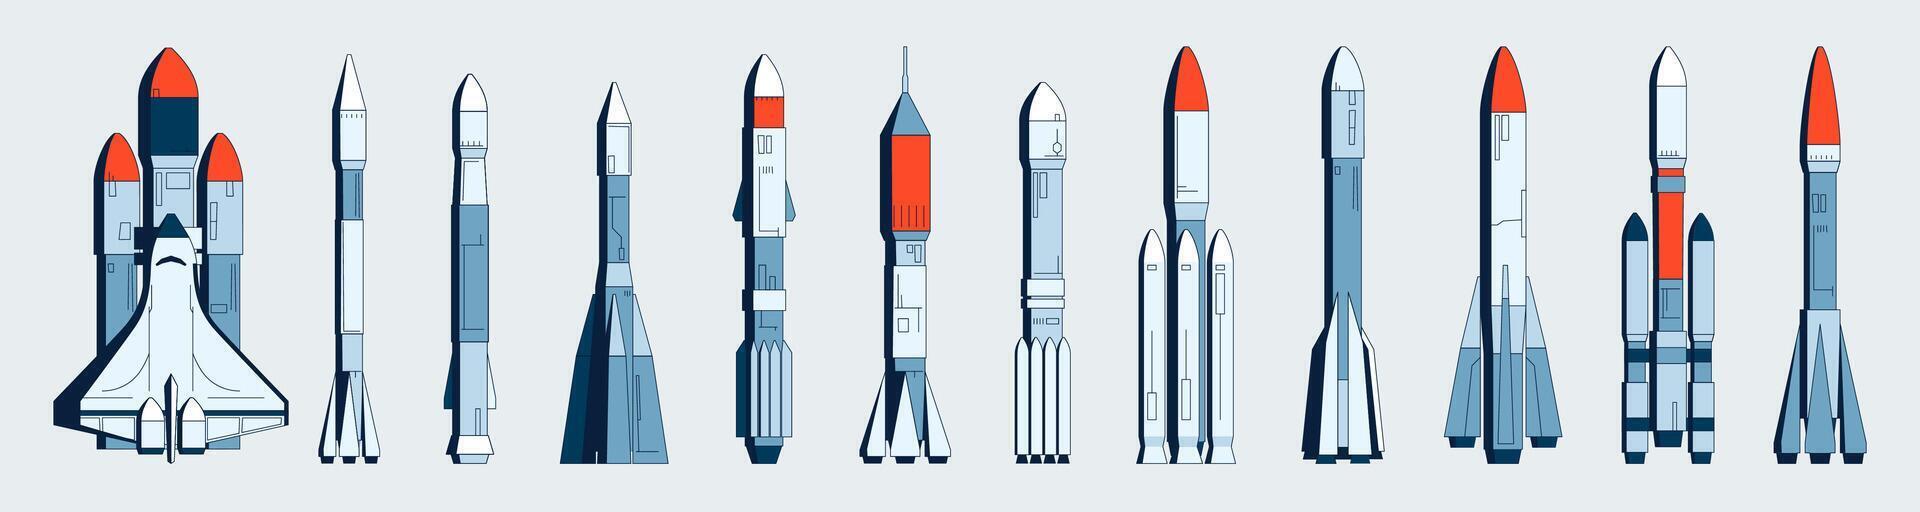 espacio cohete recopilación. vuelo astronave con espacio módulo, cohete para suborbital vuelo, espacio misión y astronomía concepto. vector conjunto